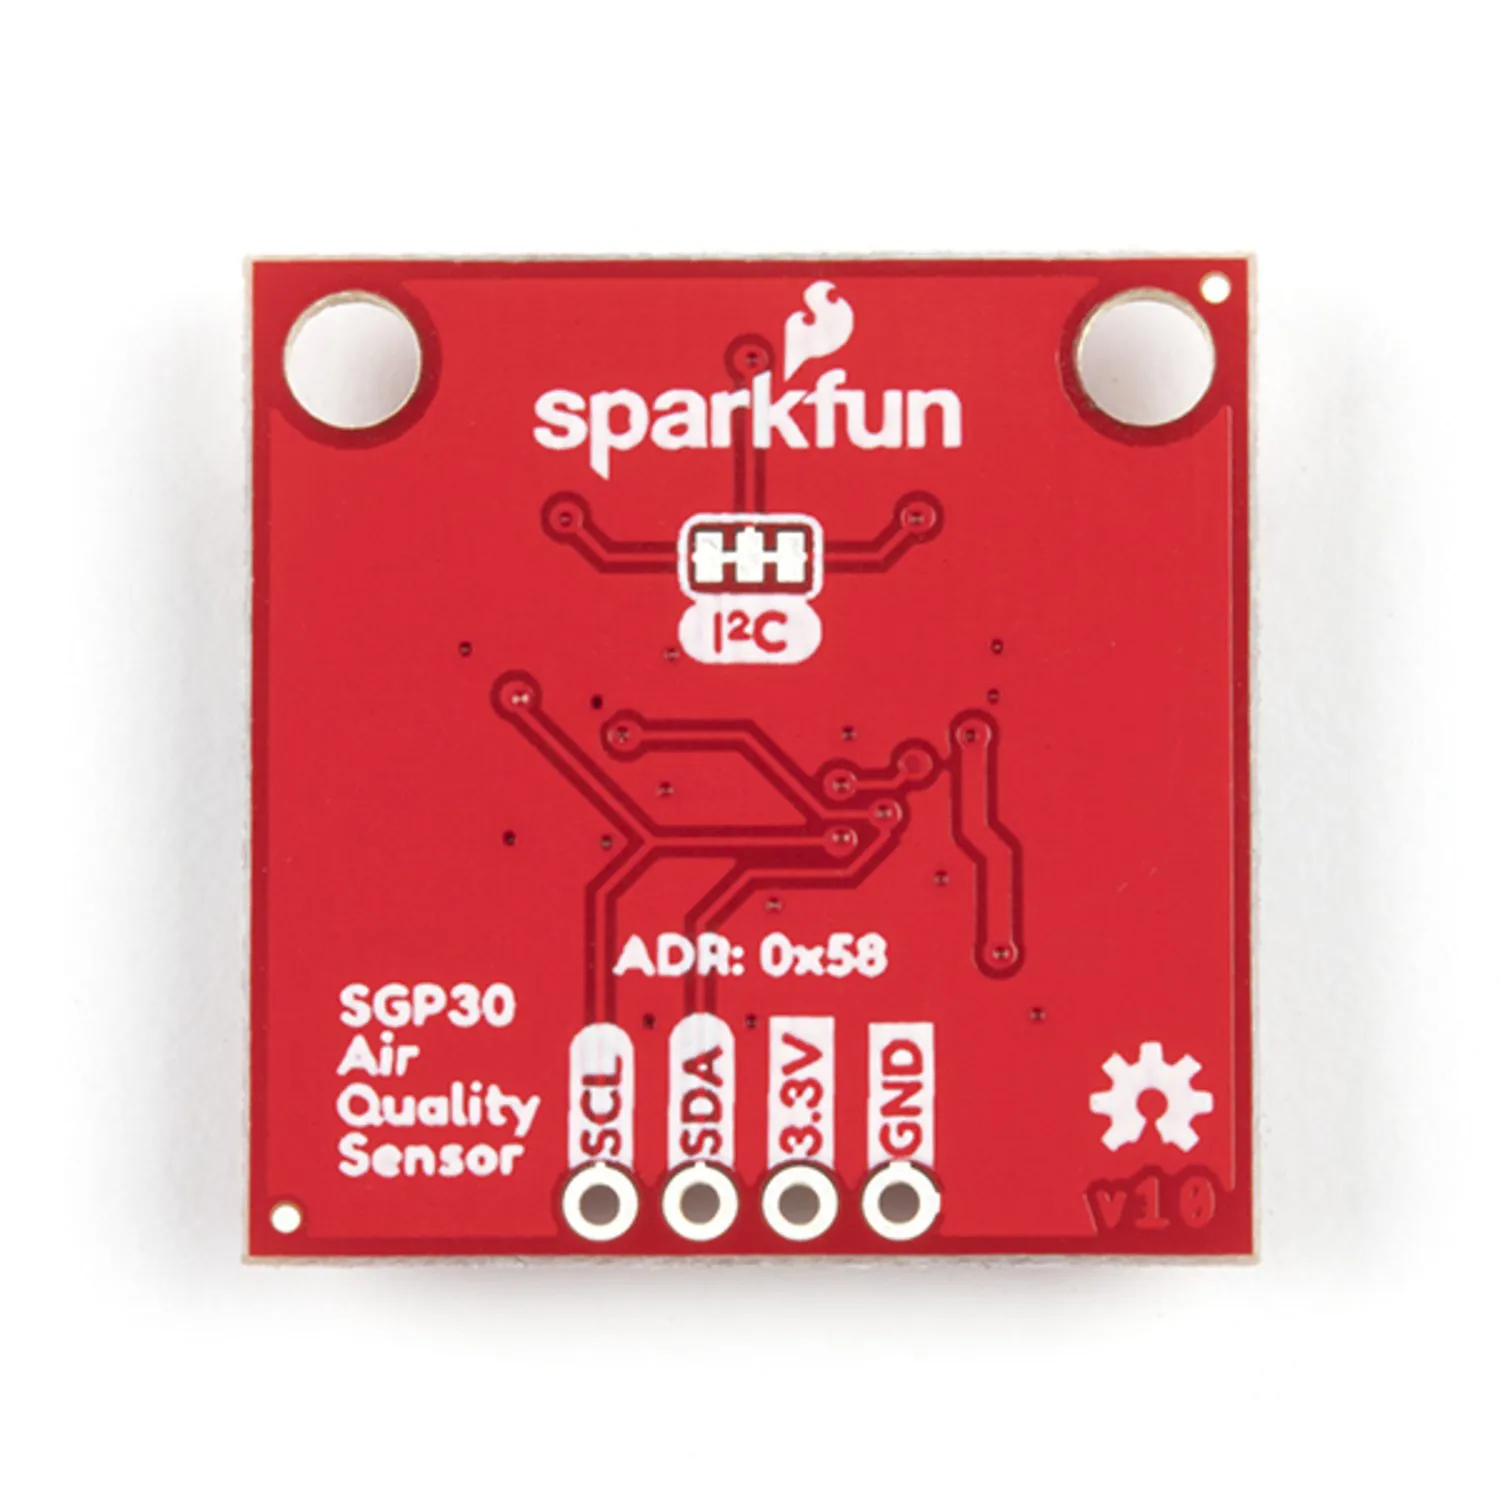 Photo of SparkFun Air Quality Sensor - SGP30 (Qwiic)